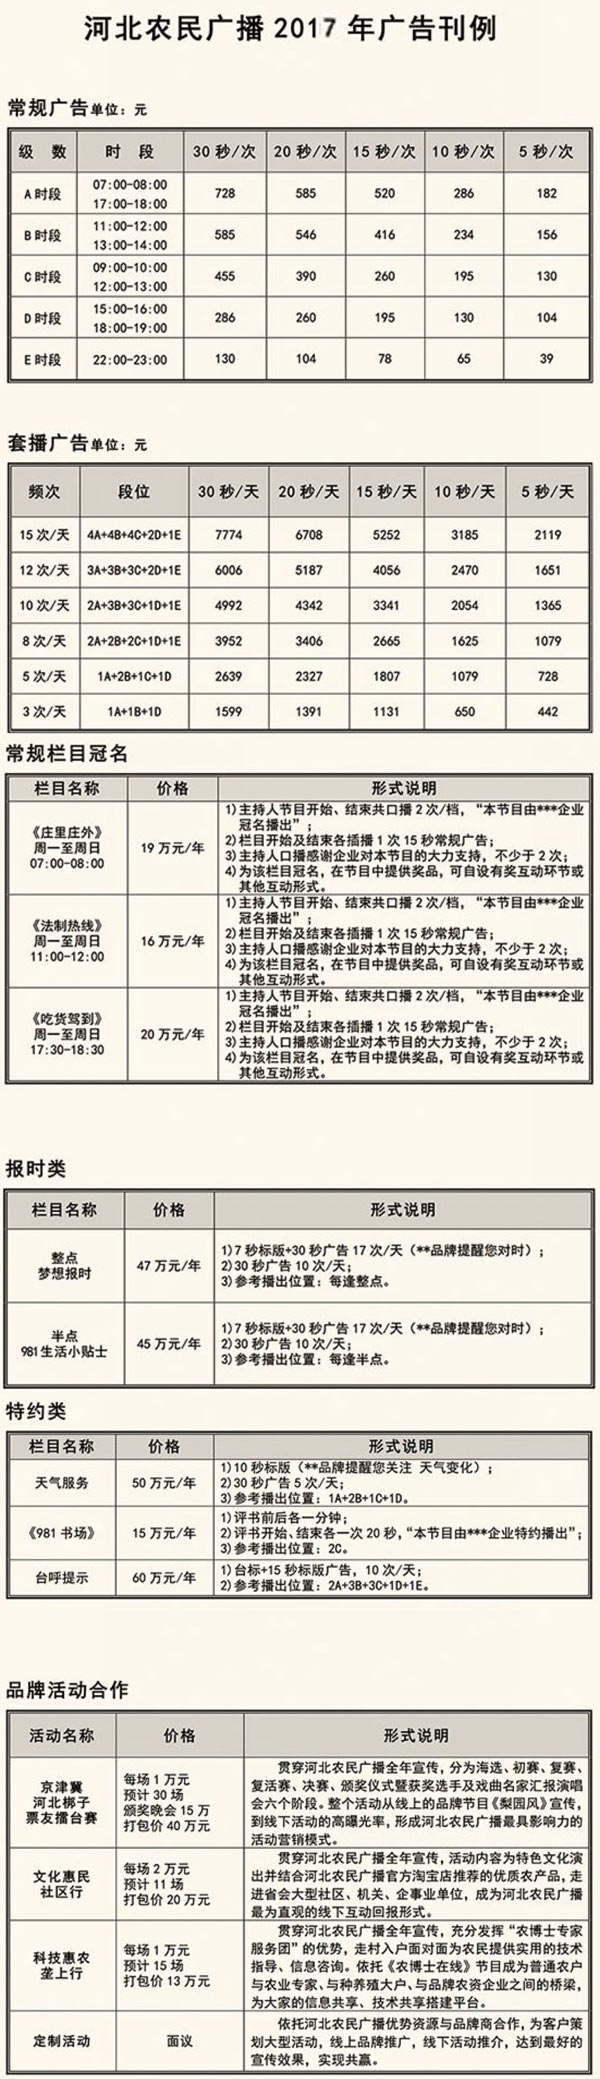 河北电台农民广播（FM98.1）2017年广告价格